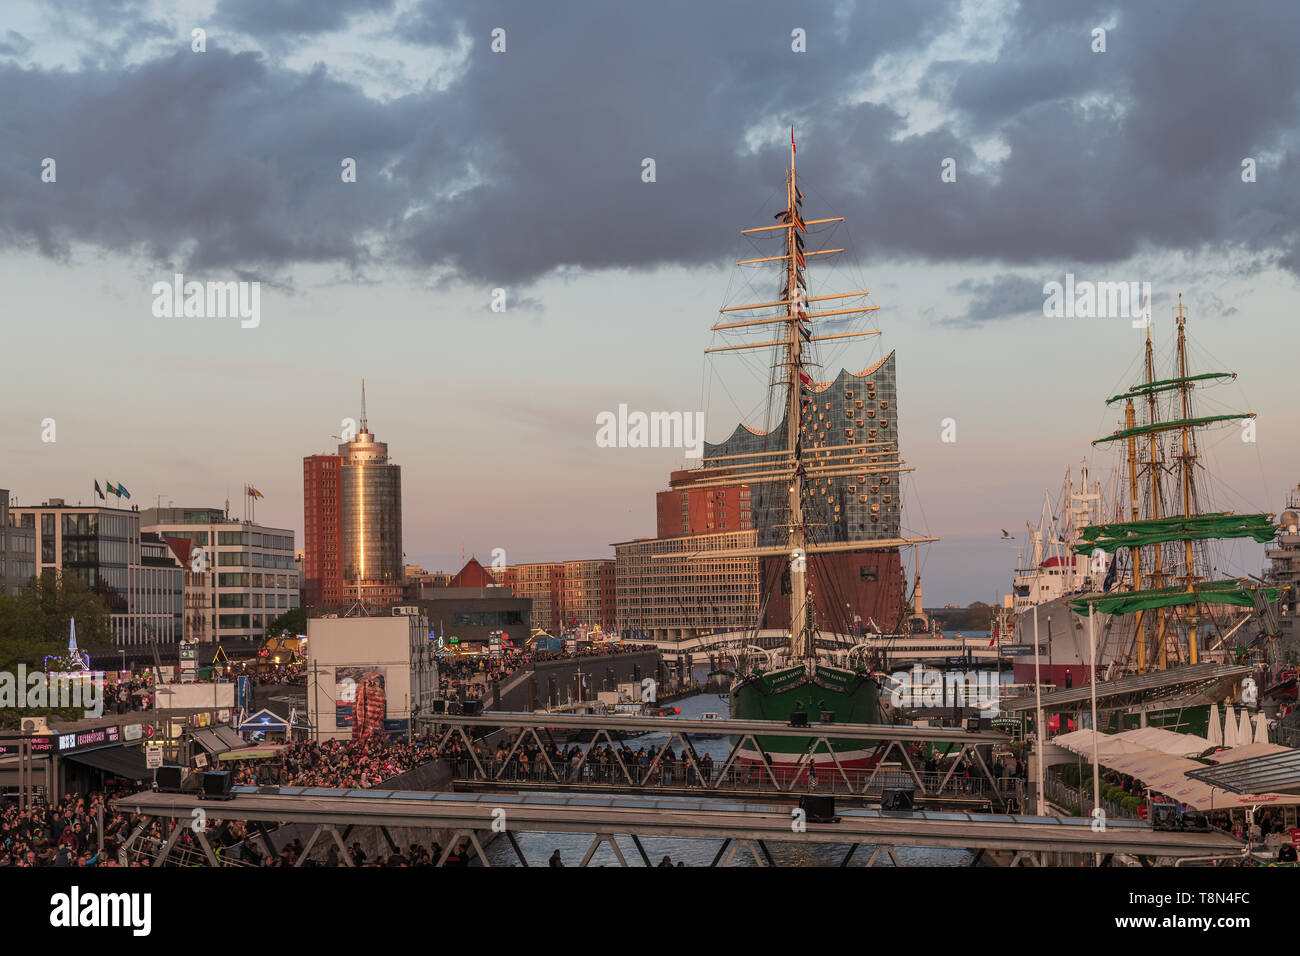 Der Blick vom Blockbräu zur Elbphilharmonie beim Hamburger Hafengeburtstag Stock Photo